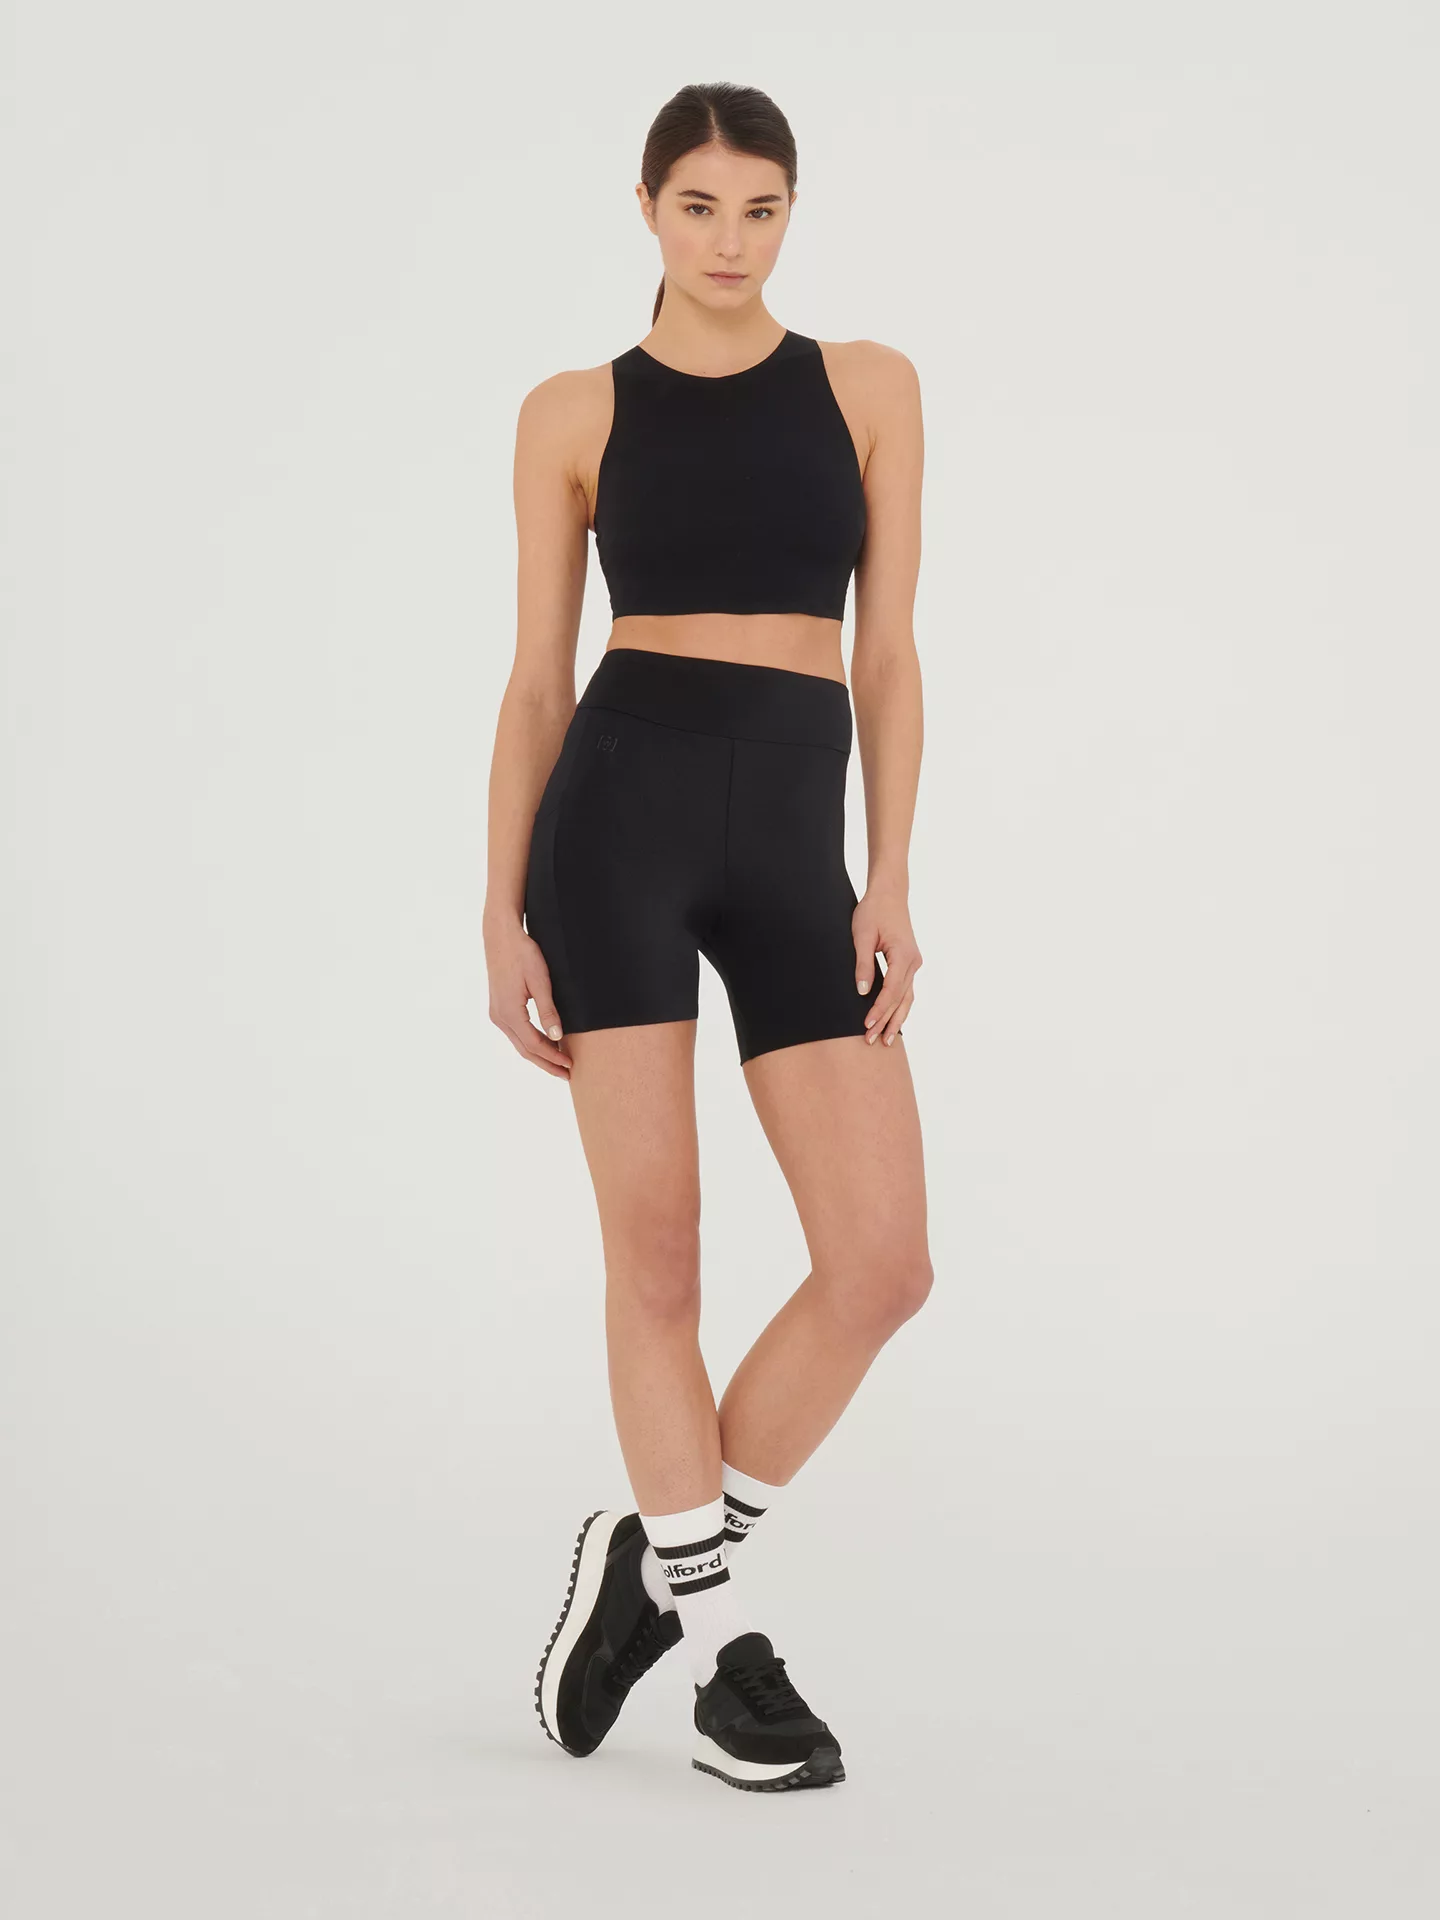 Wolford - The Workout Shorts, Frau, black, Größe: XS günstig online kaufen